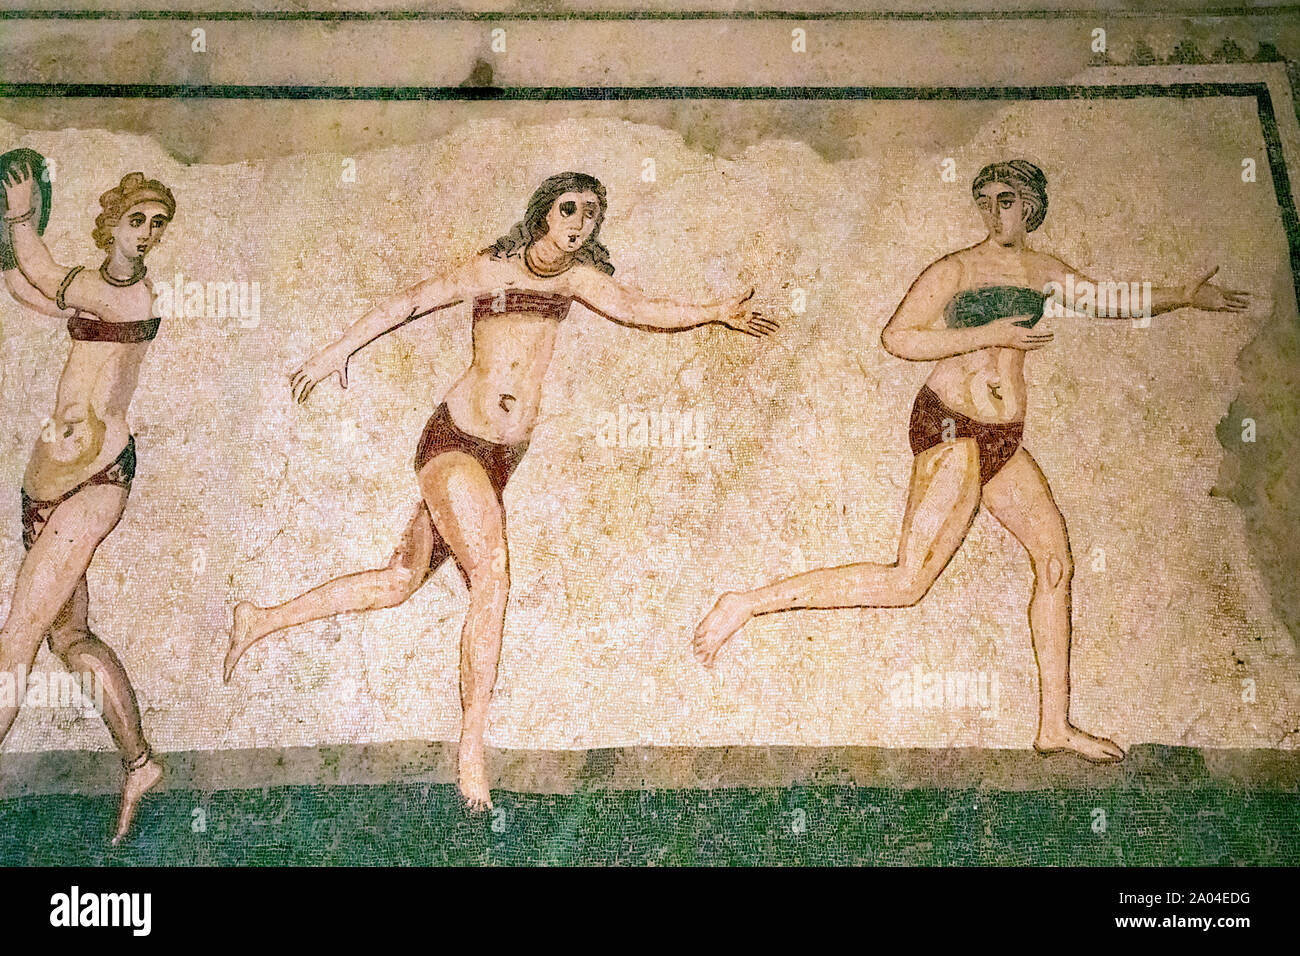 Bikini romain antique mosaïque de Piazza Armerina, Sicile Banque D'Images